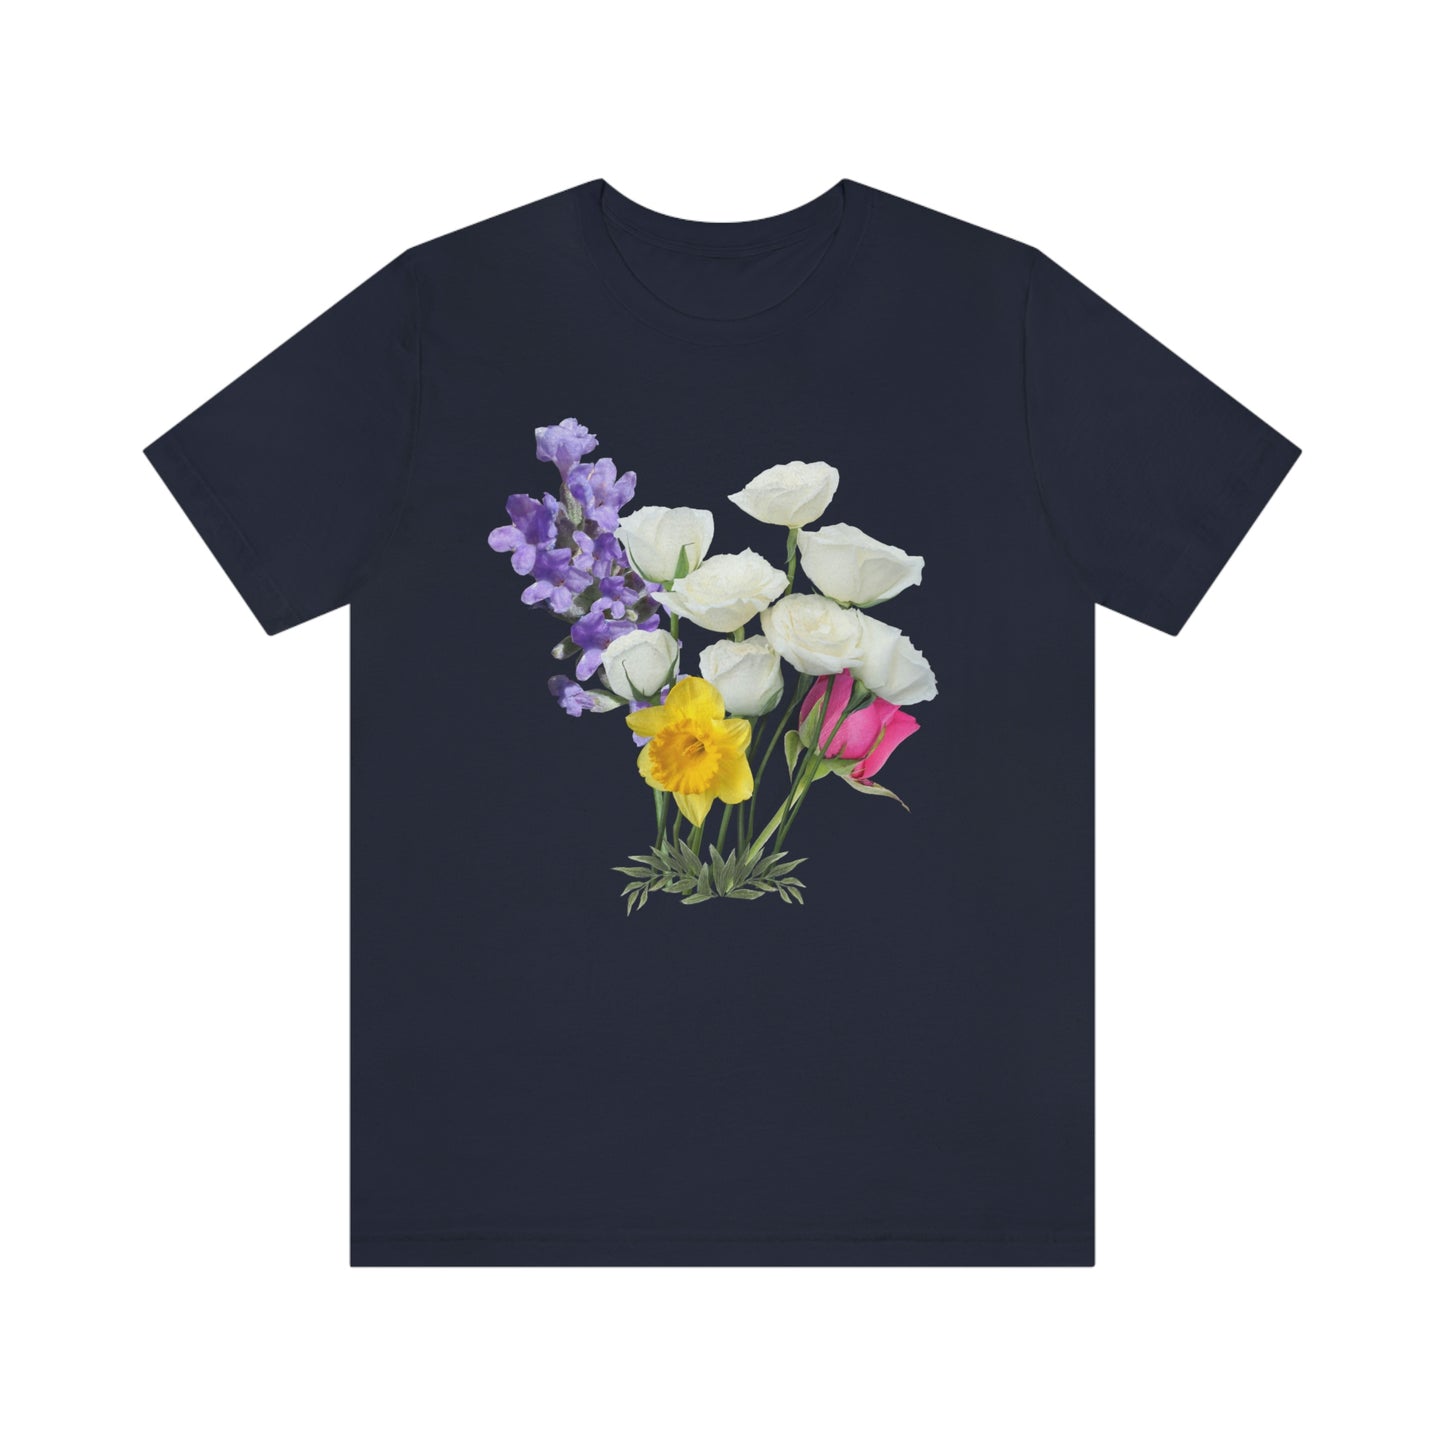 Cute Flower shirt - Nature lover Shirt - Flower lover shirt